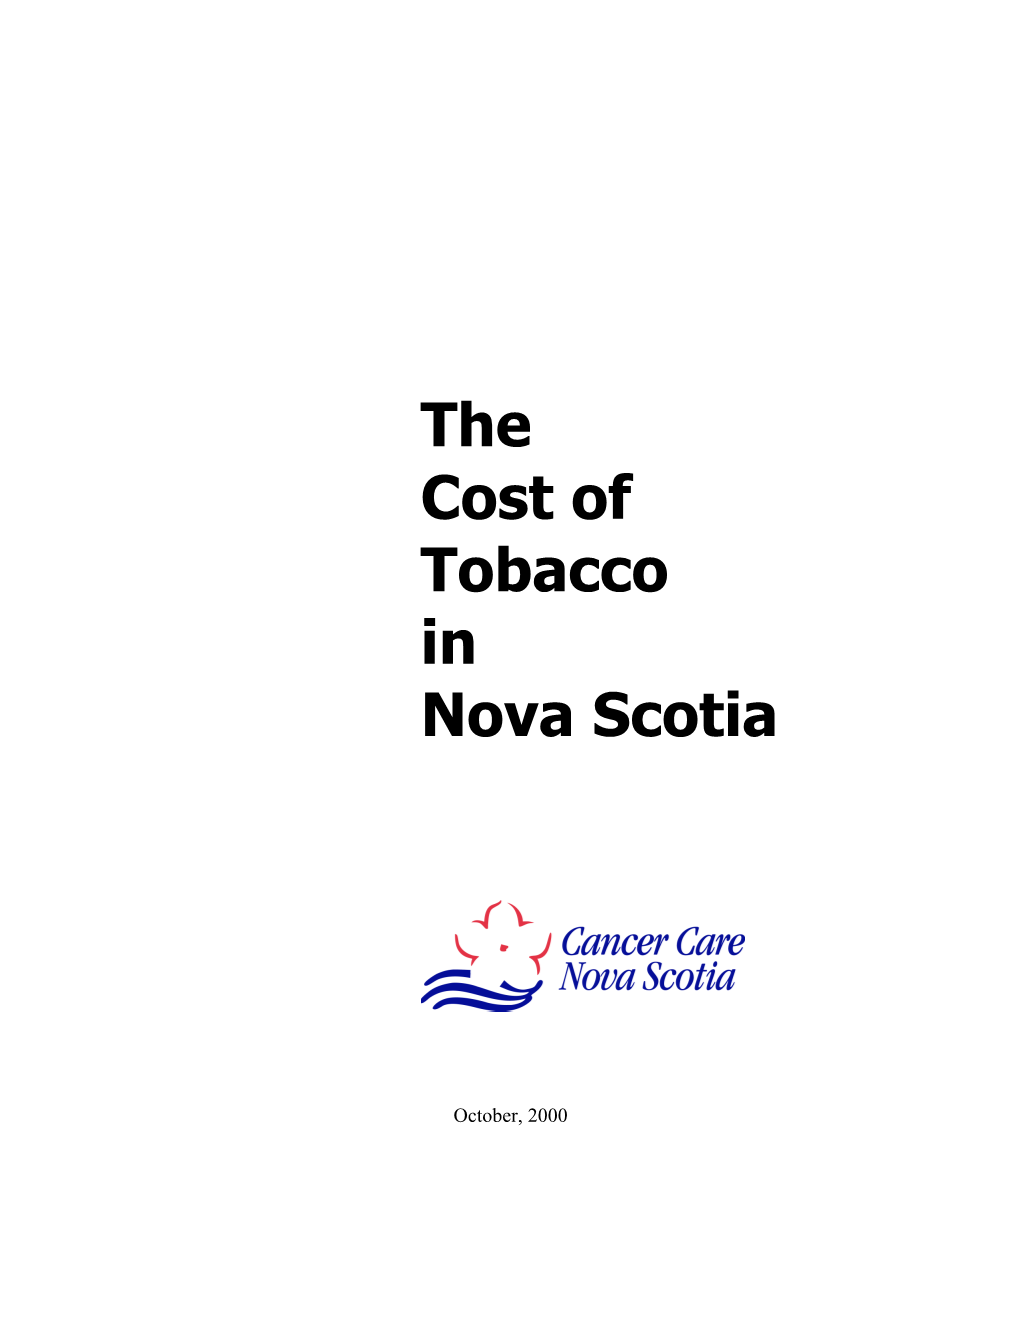 The Cost of Tobacco in Nova Scotia